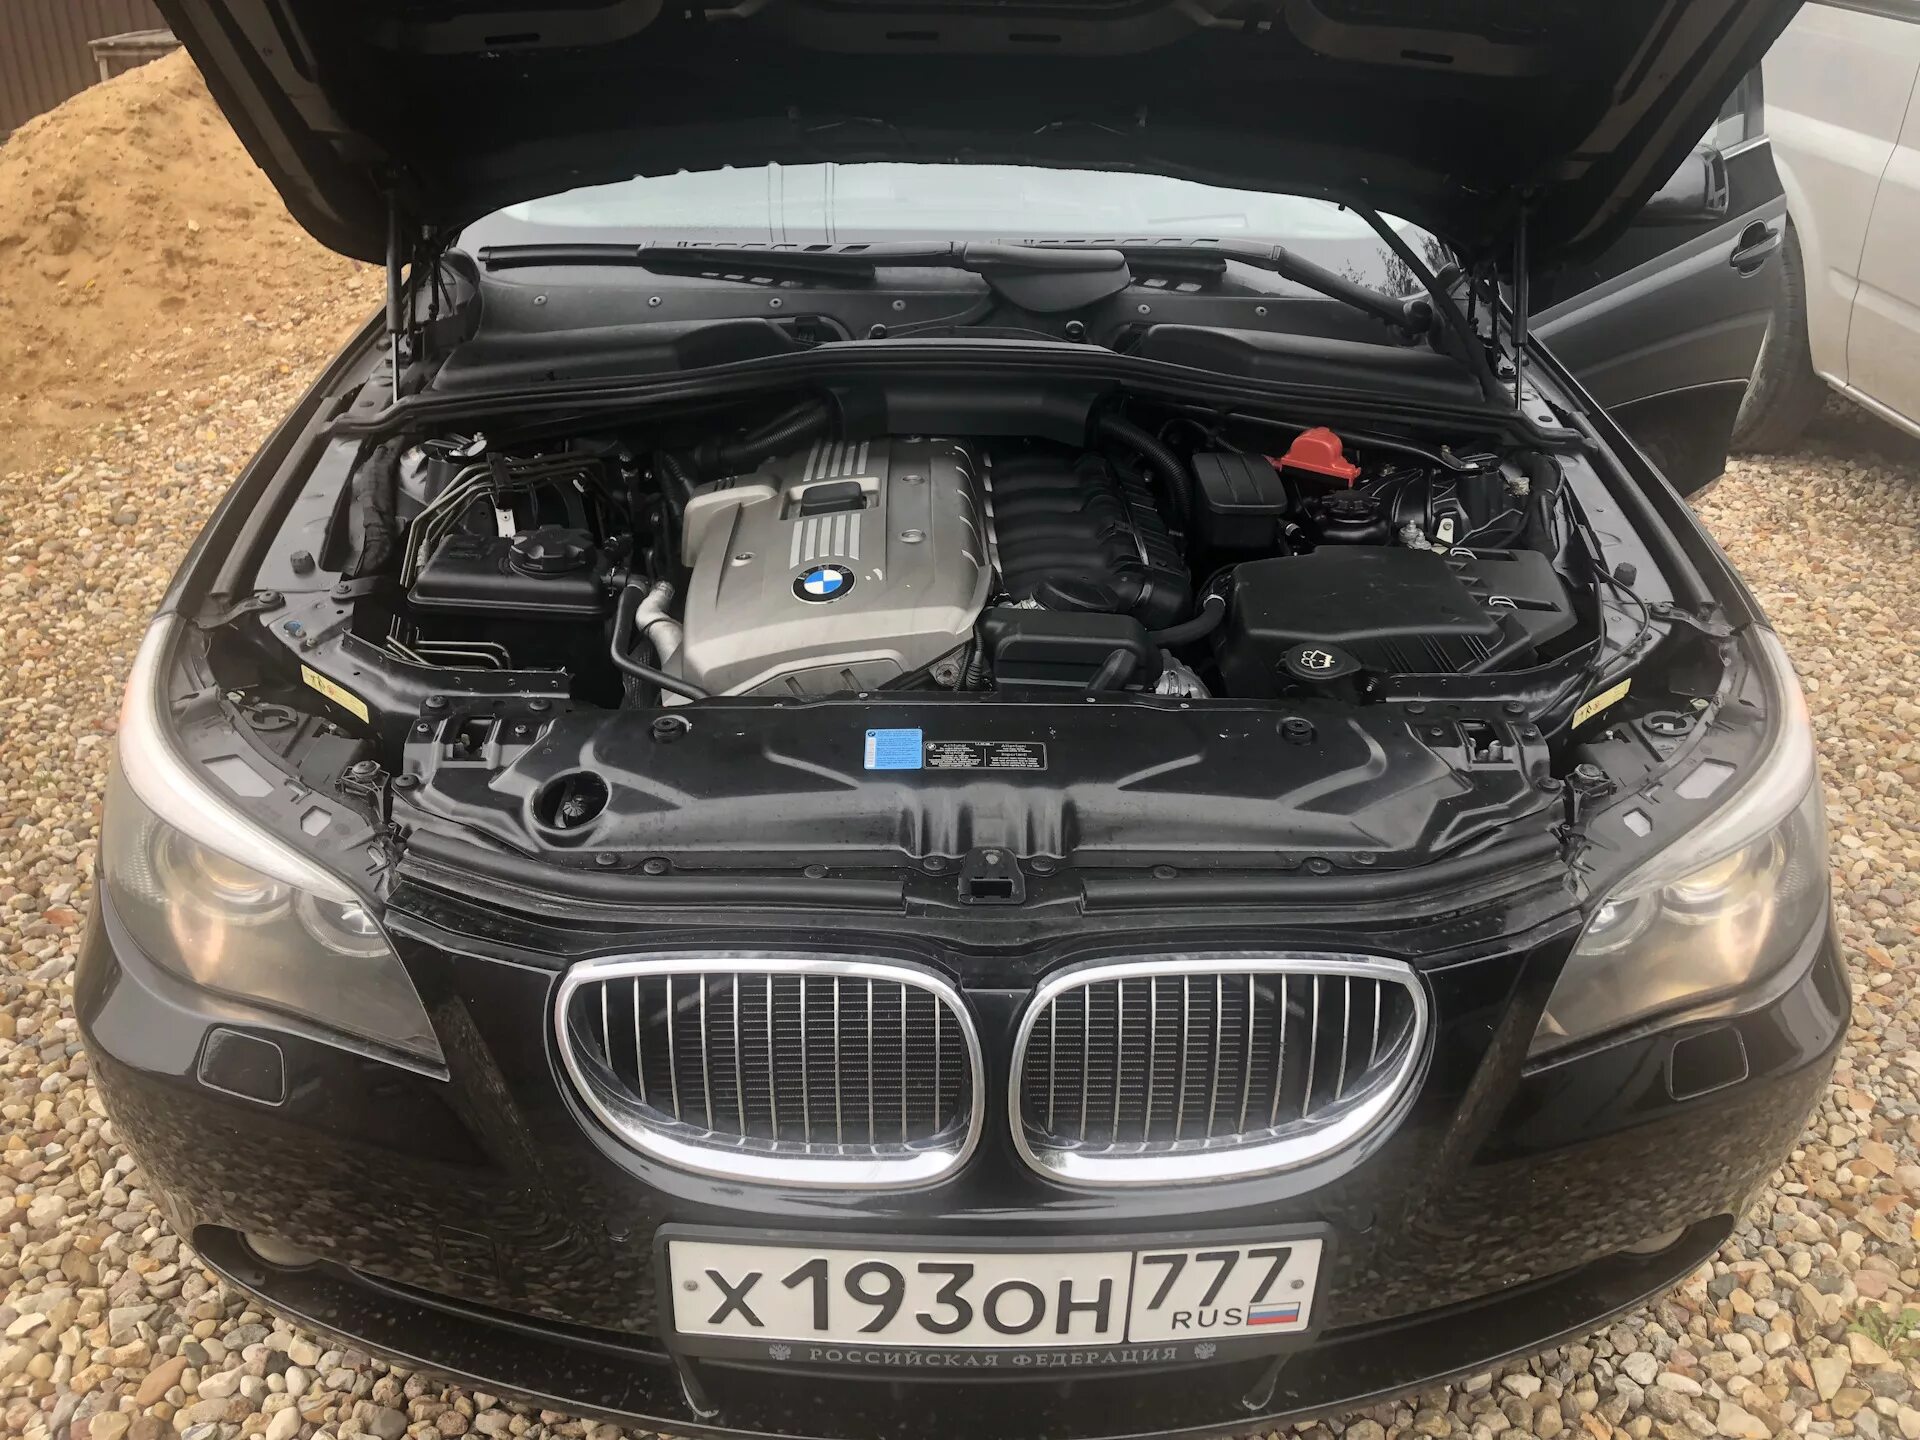 Е60 3.0 бензин. BMW e60 3.0. BMW e60 2.5. BMW e60 мотор. БМВ 5 е60 3.0 дизель.